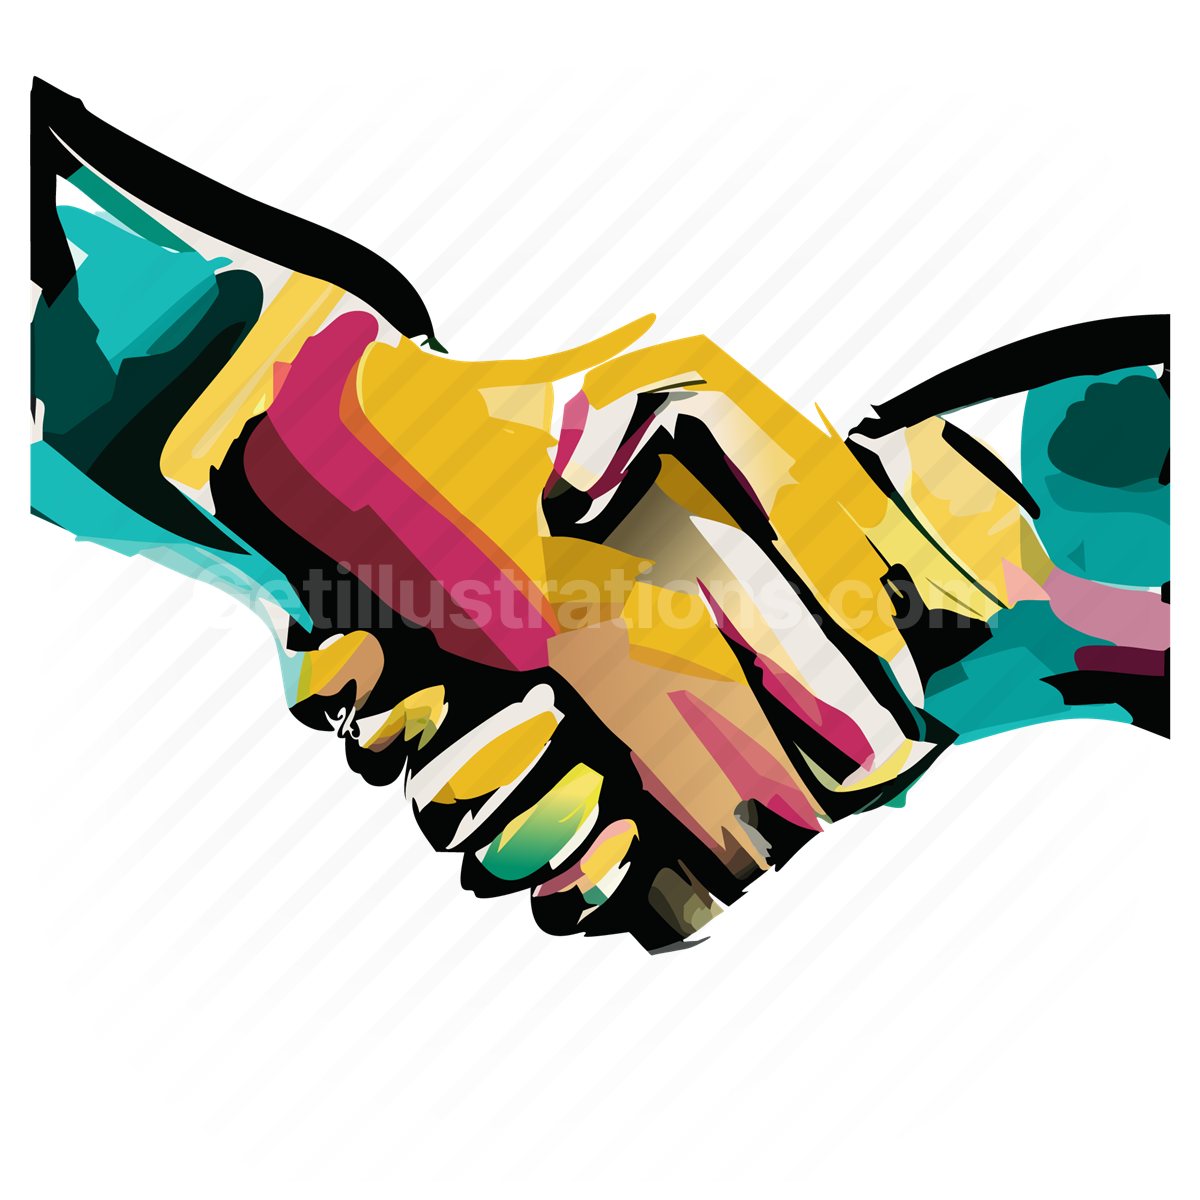 handshake, deal, agreement, hands, hand, gesture, business